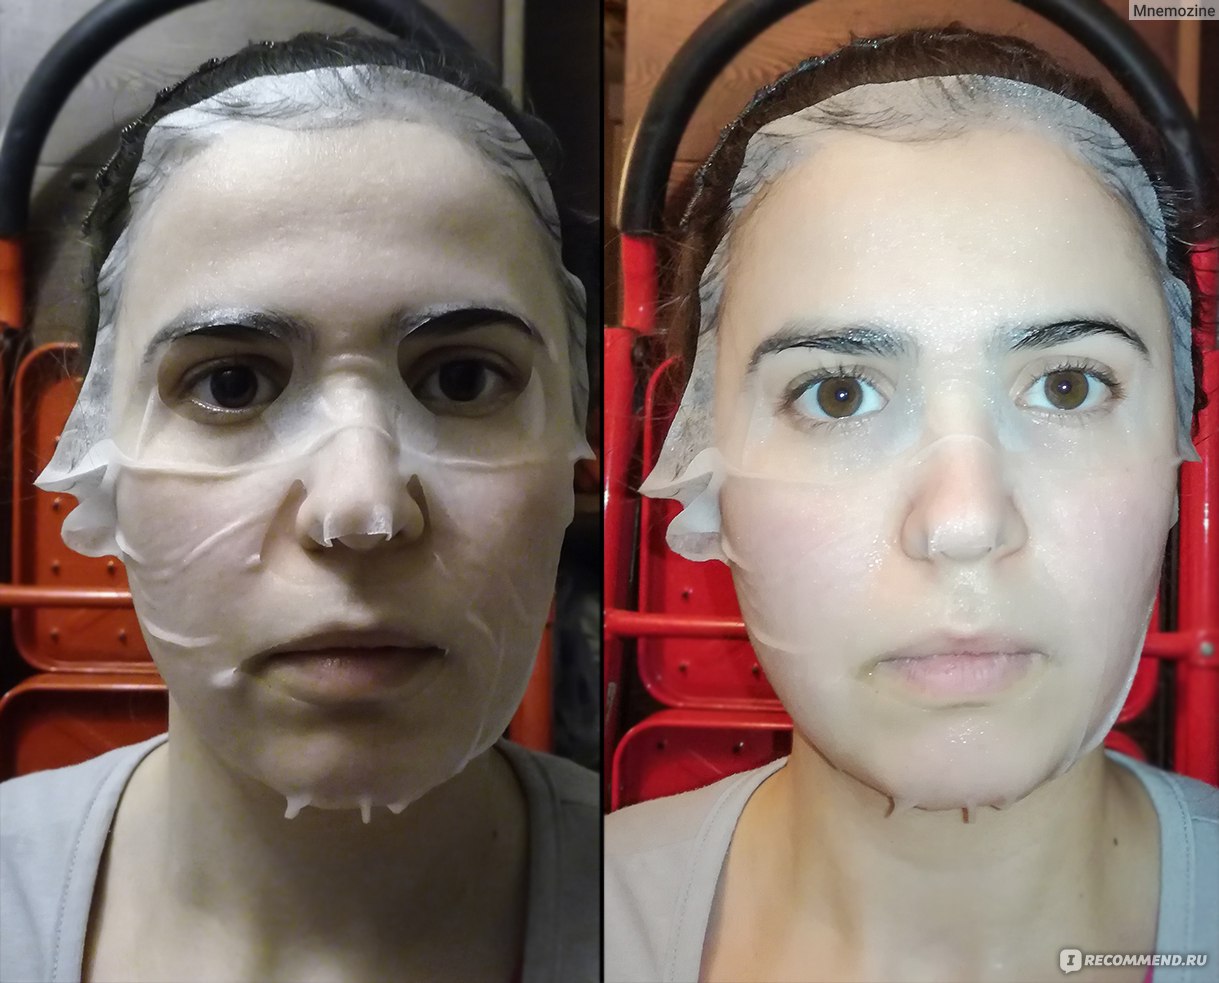 После тканевой маски нужно ли мыть лицо